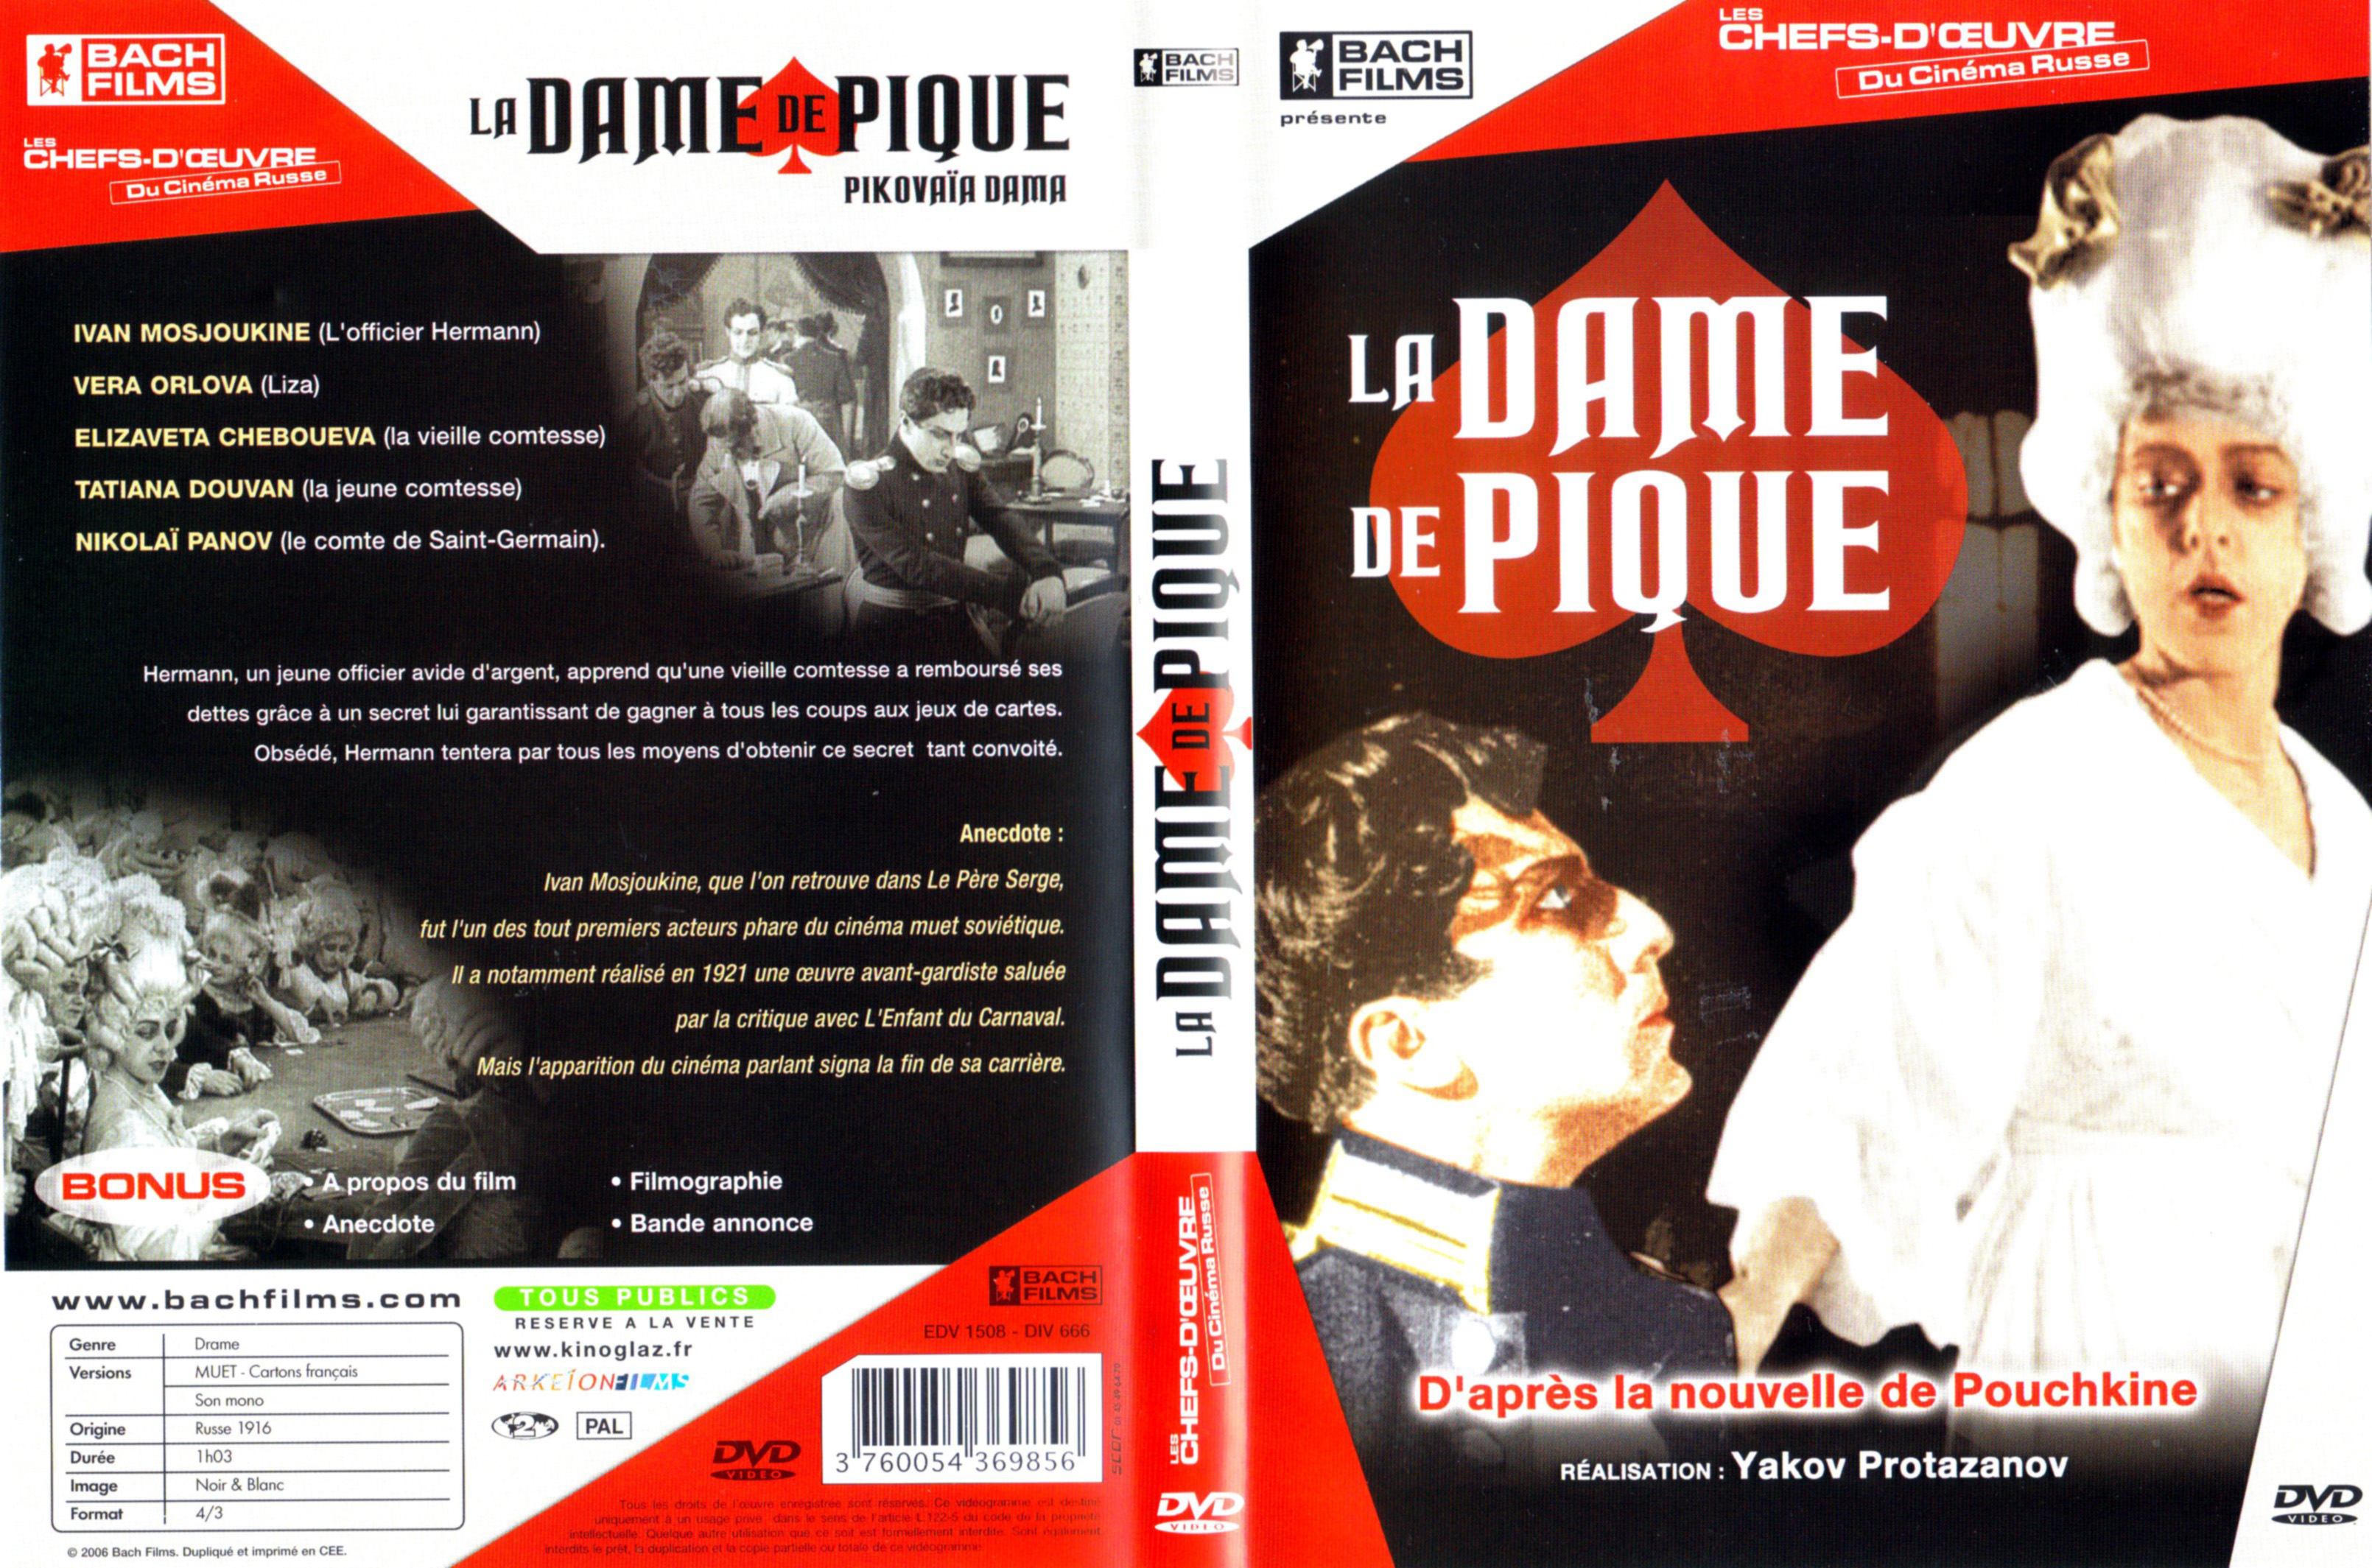 Jaquette DVD La dame de pique